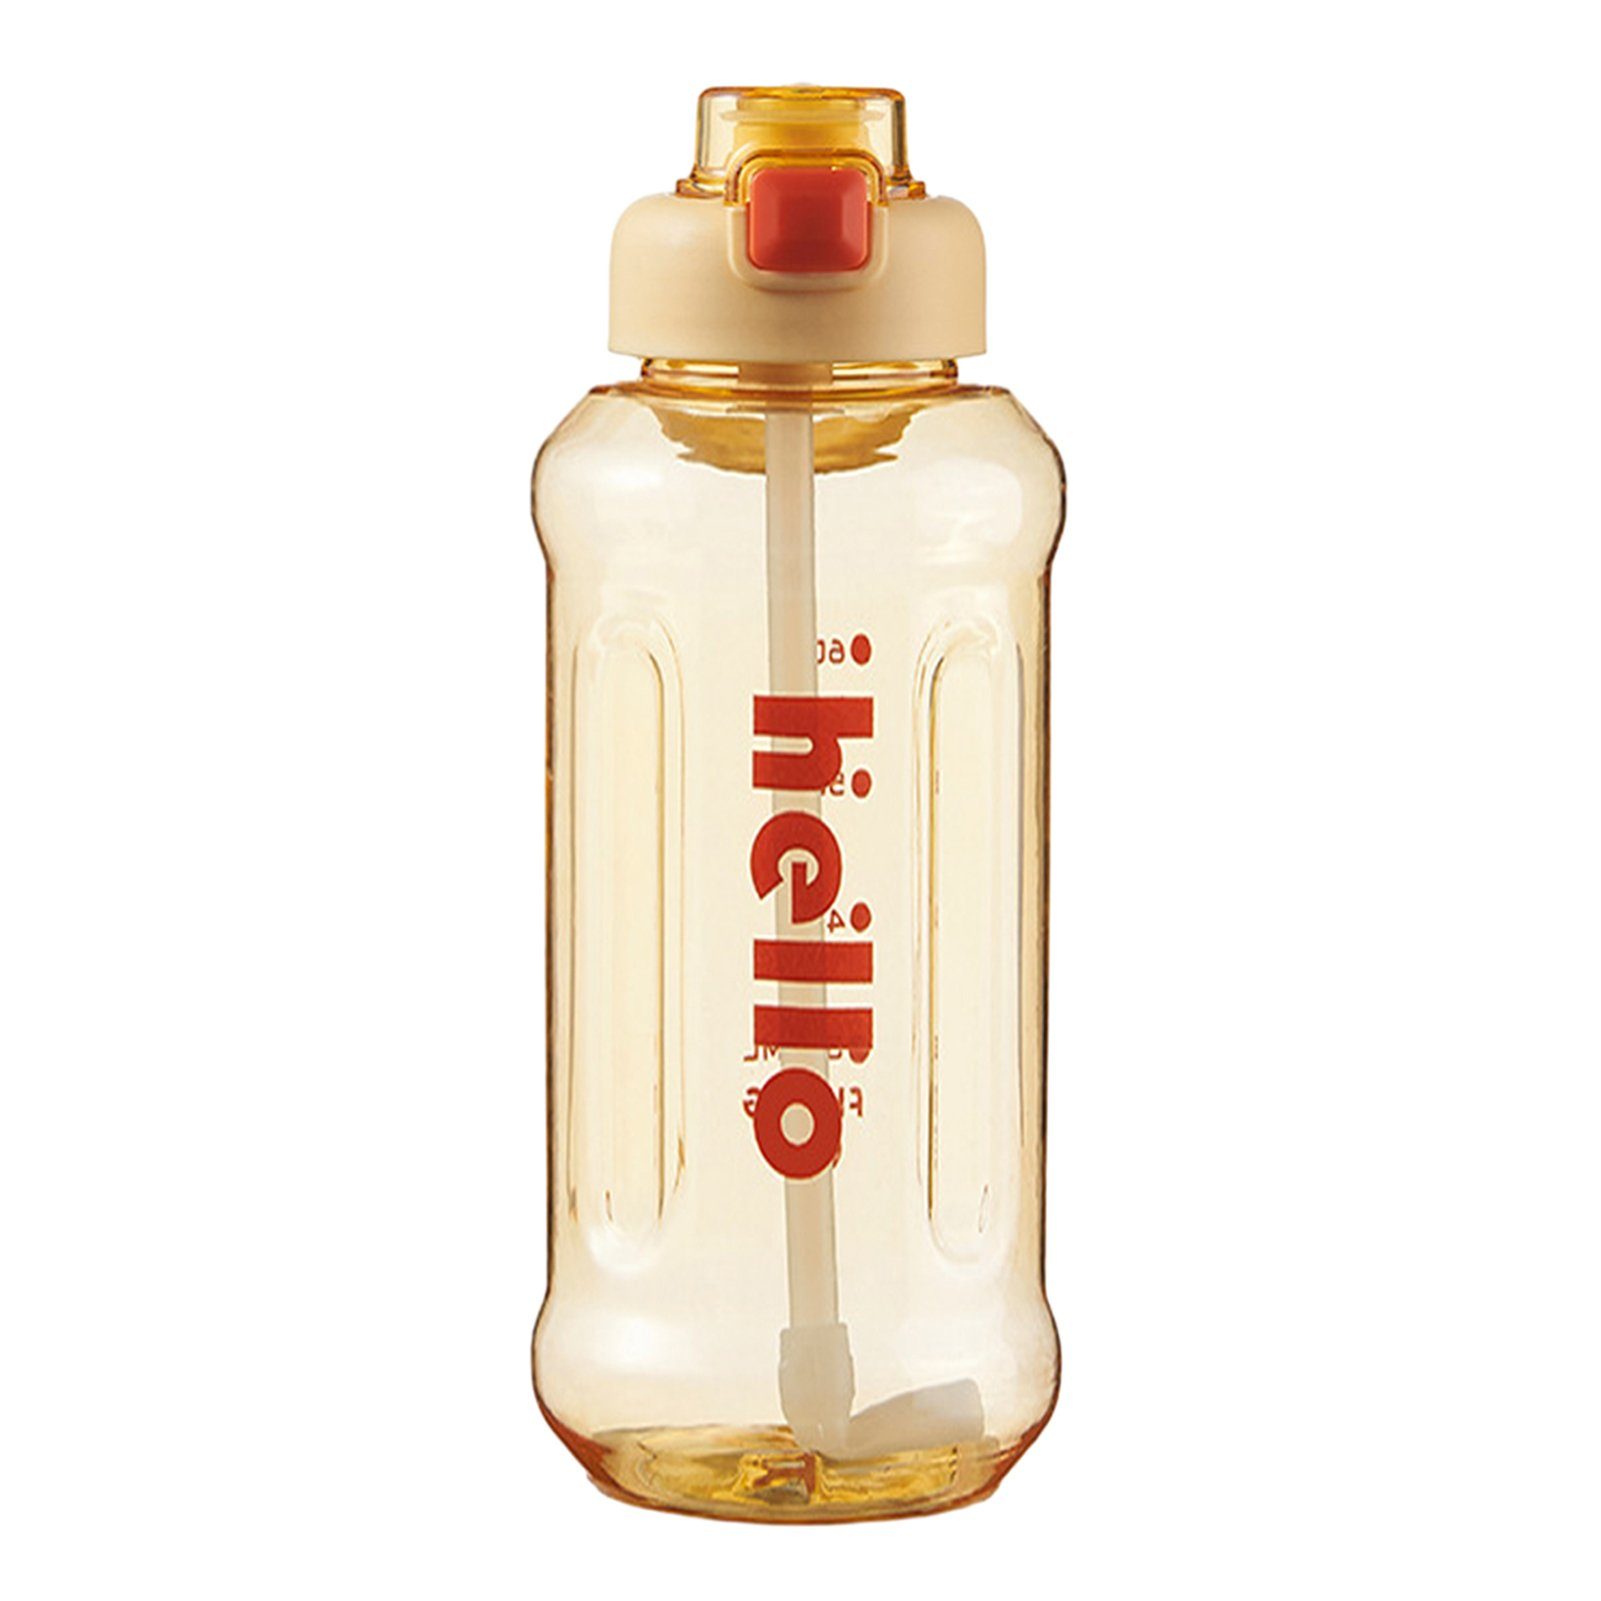 Blusmart Trinkflasche Tragbarer Stroh-Wasserbecher Mit Griff, Hoher Kapazität, Versiegelter, Trinkflasche yellow 1300ml